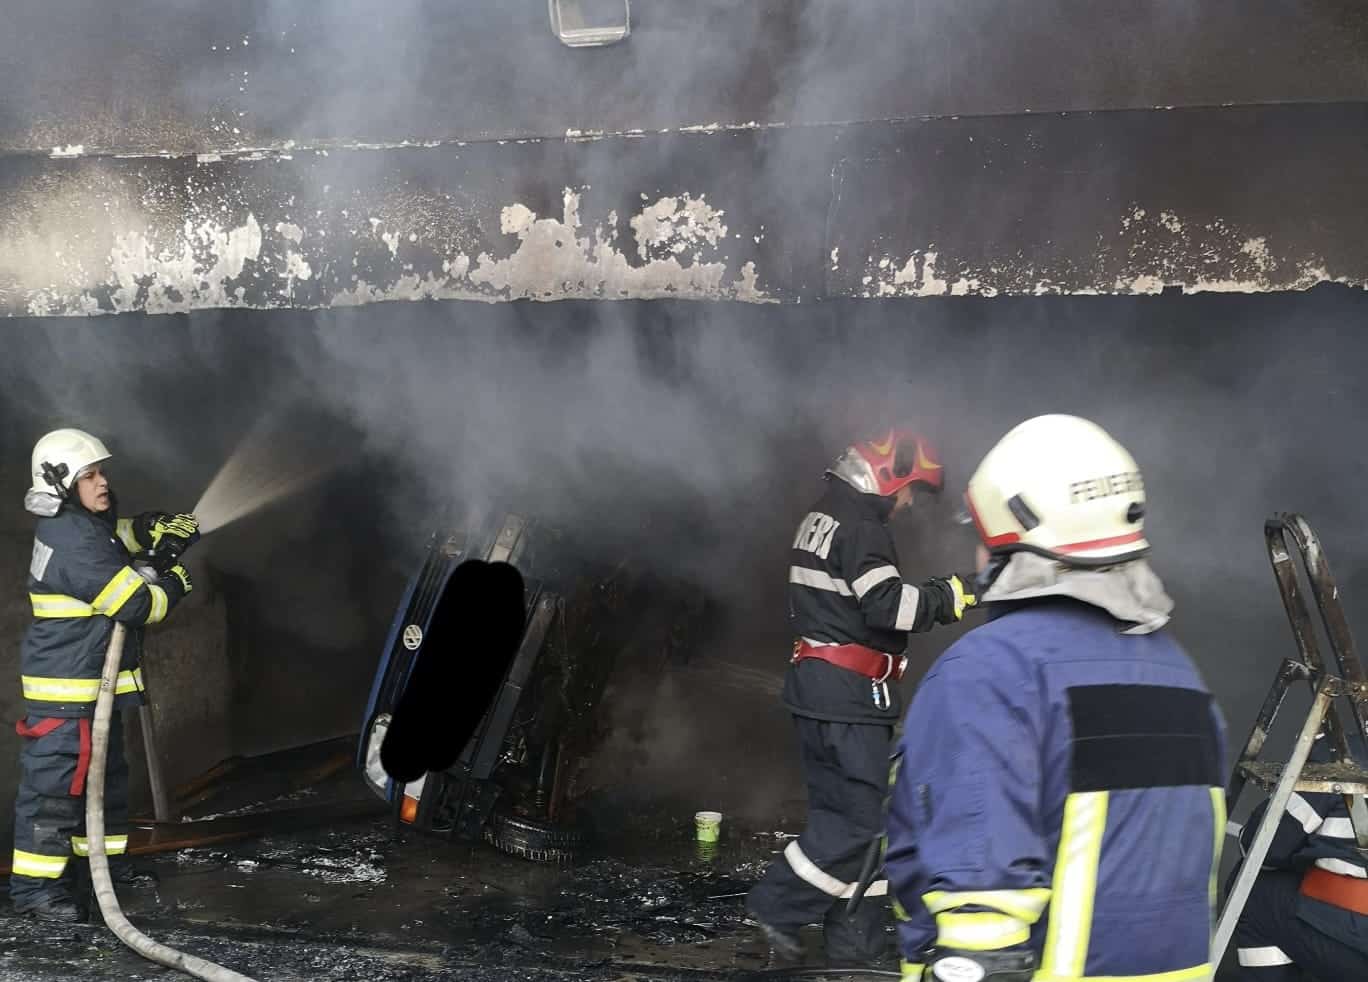 incendiu în garajul unui bărbat din agnita - i-a luat foc mașina